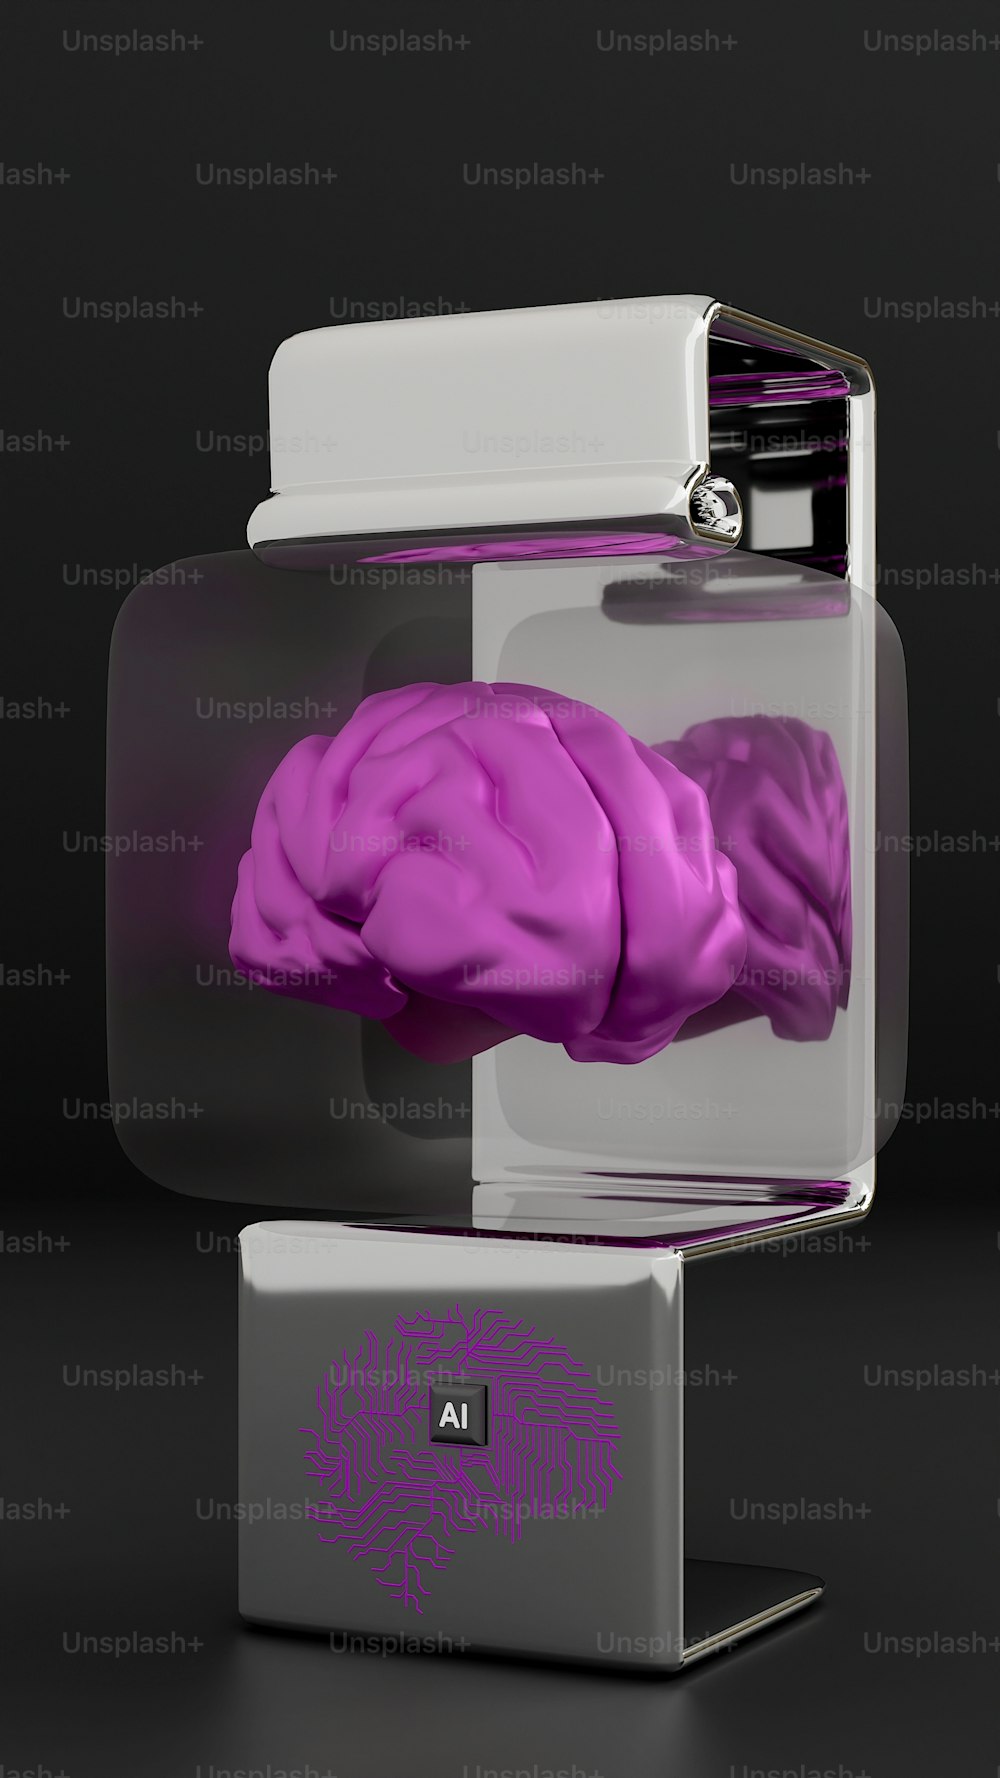 ガラスケースに収められた人間の脳の紫色の模型